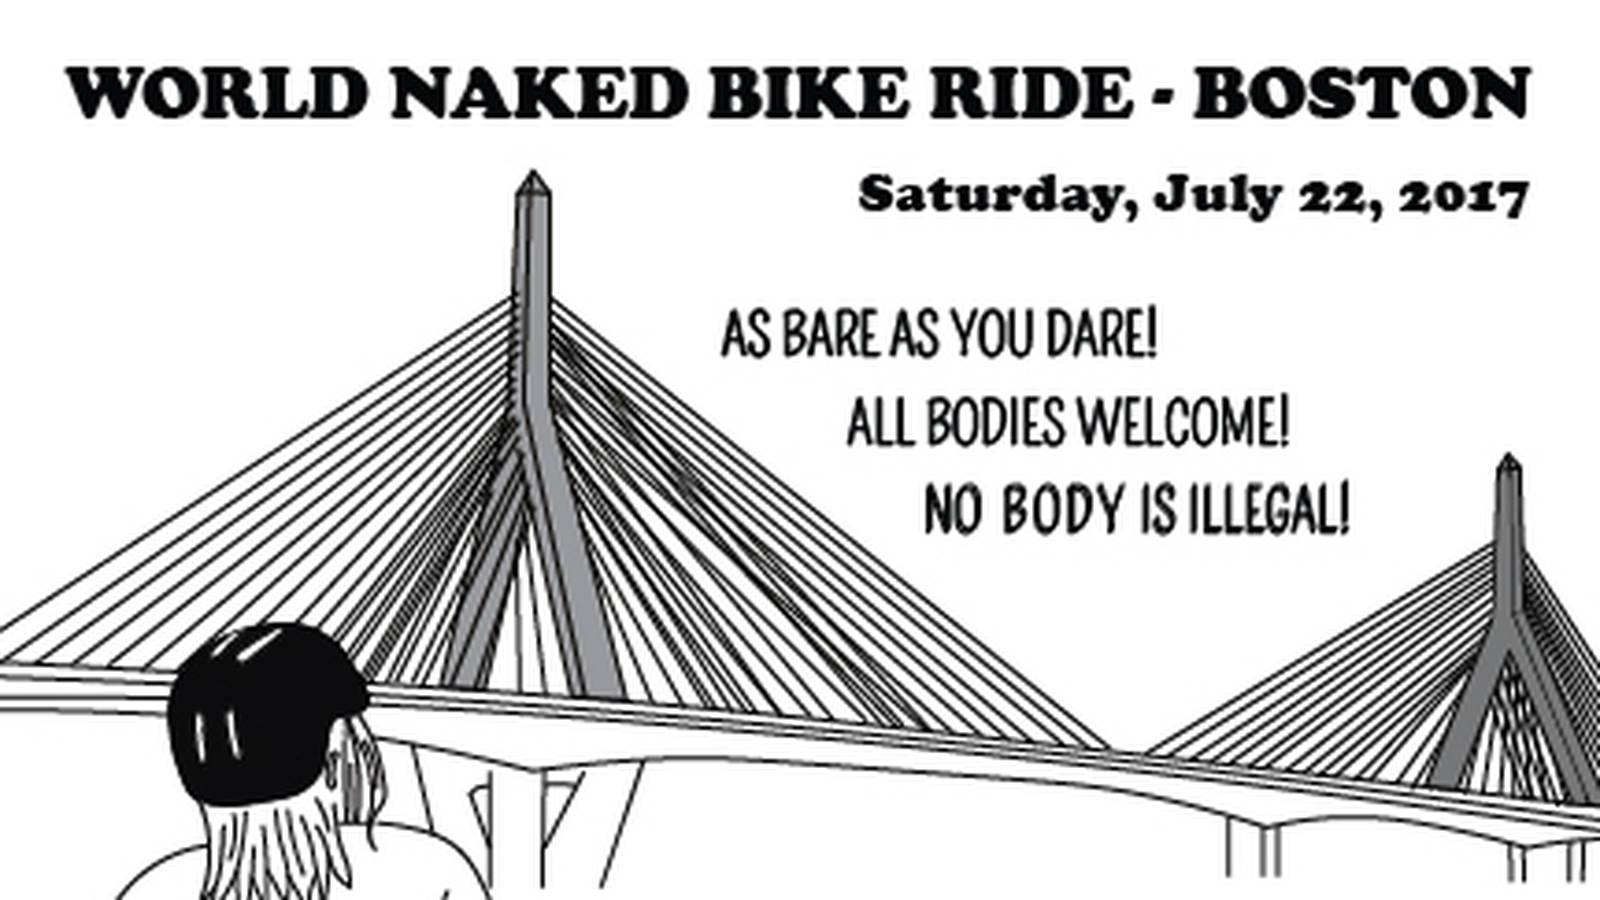 Naked bike ride planned for Boston Boston 25 News